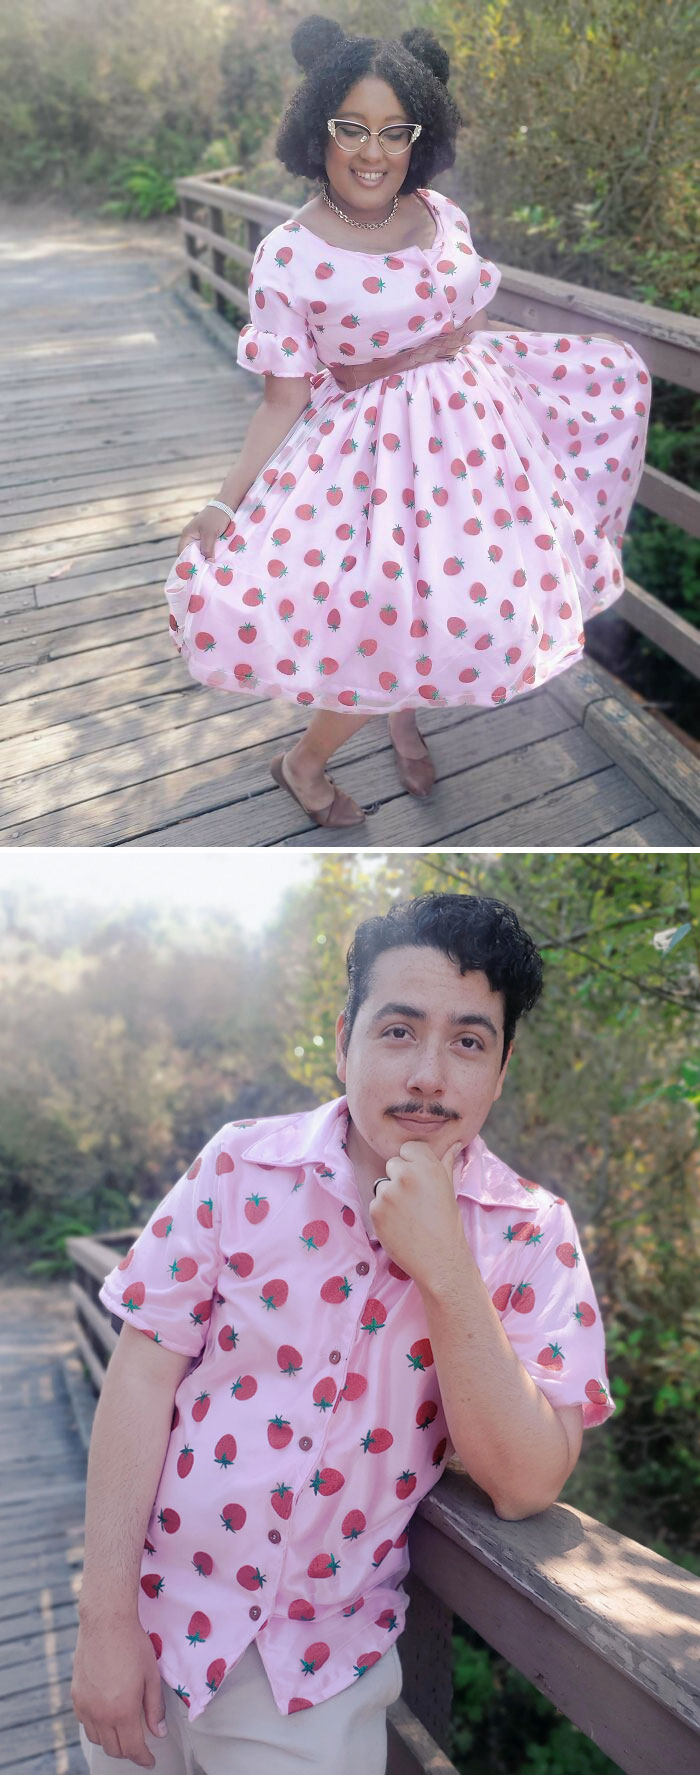 Me hice el vestido de frutillas de mis sueños, junto a una camisa a juego para mi esposo